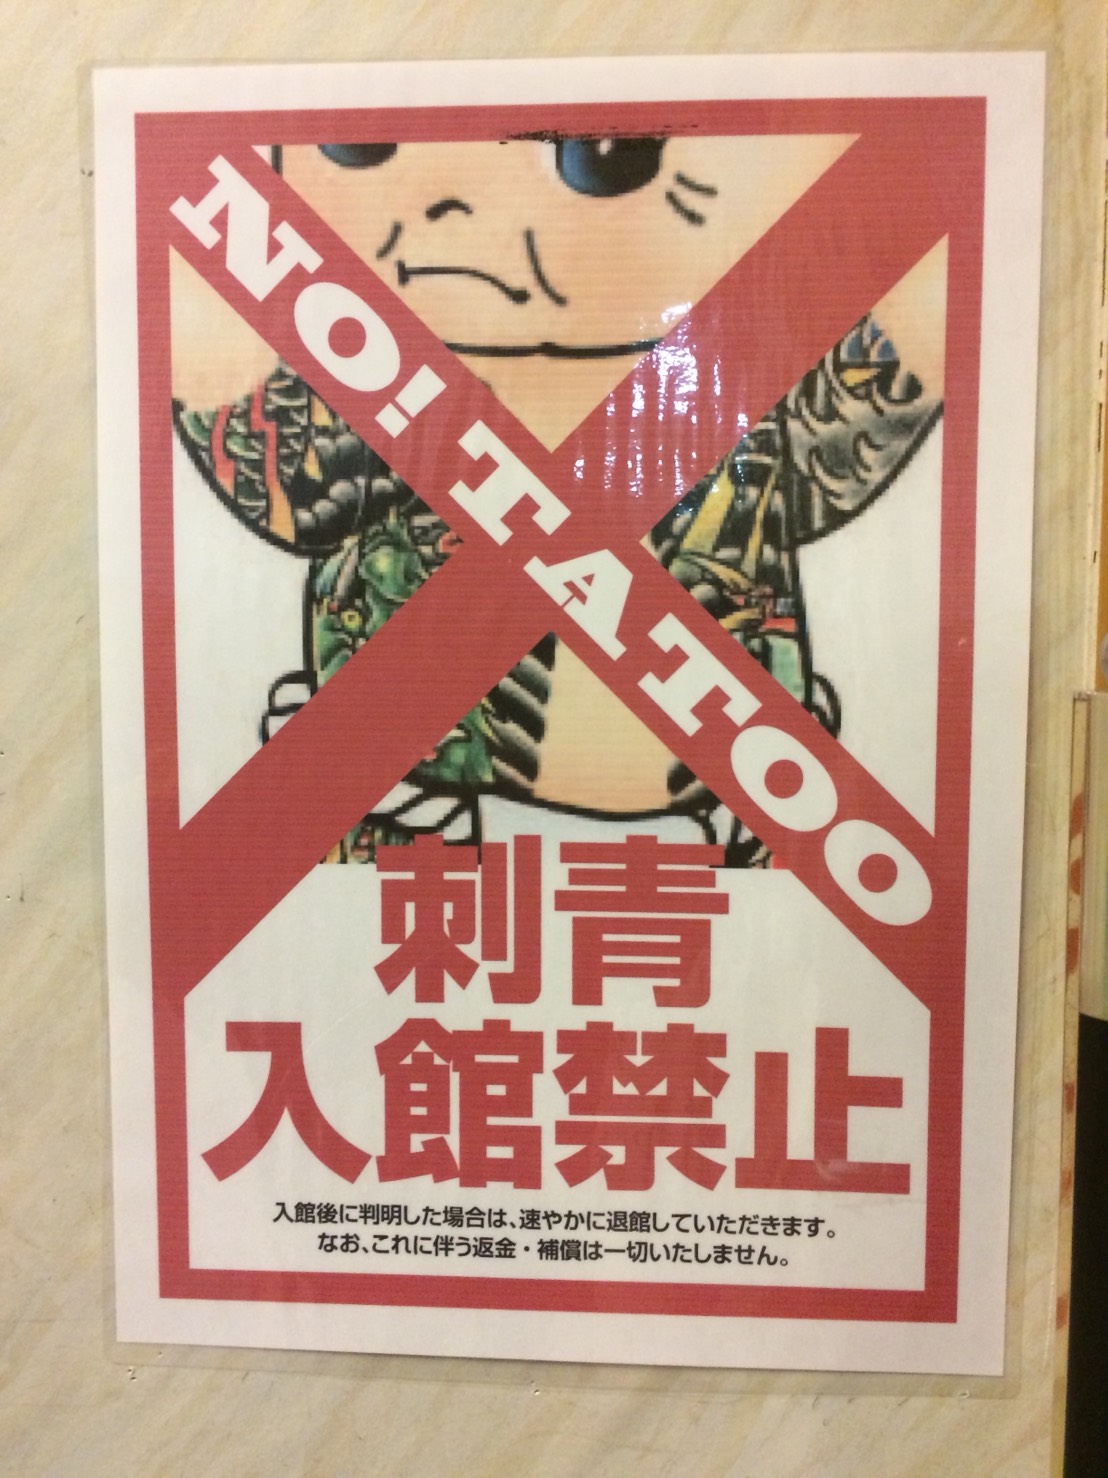 Schild: Keine Tattoos erlaubt